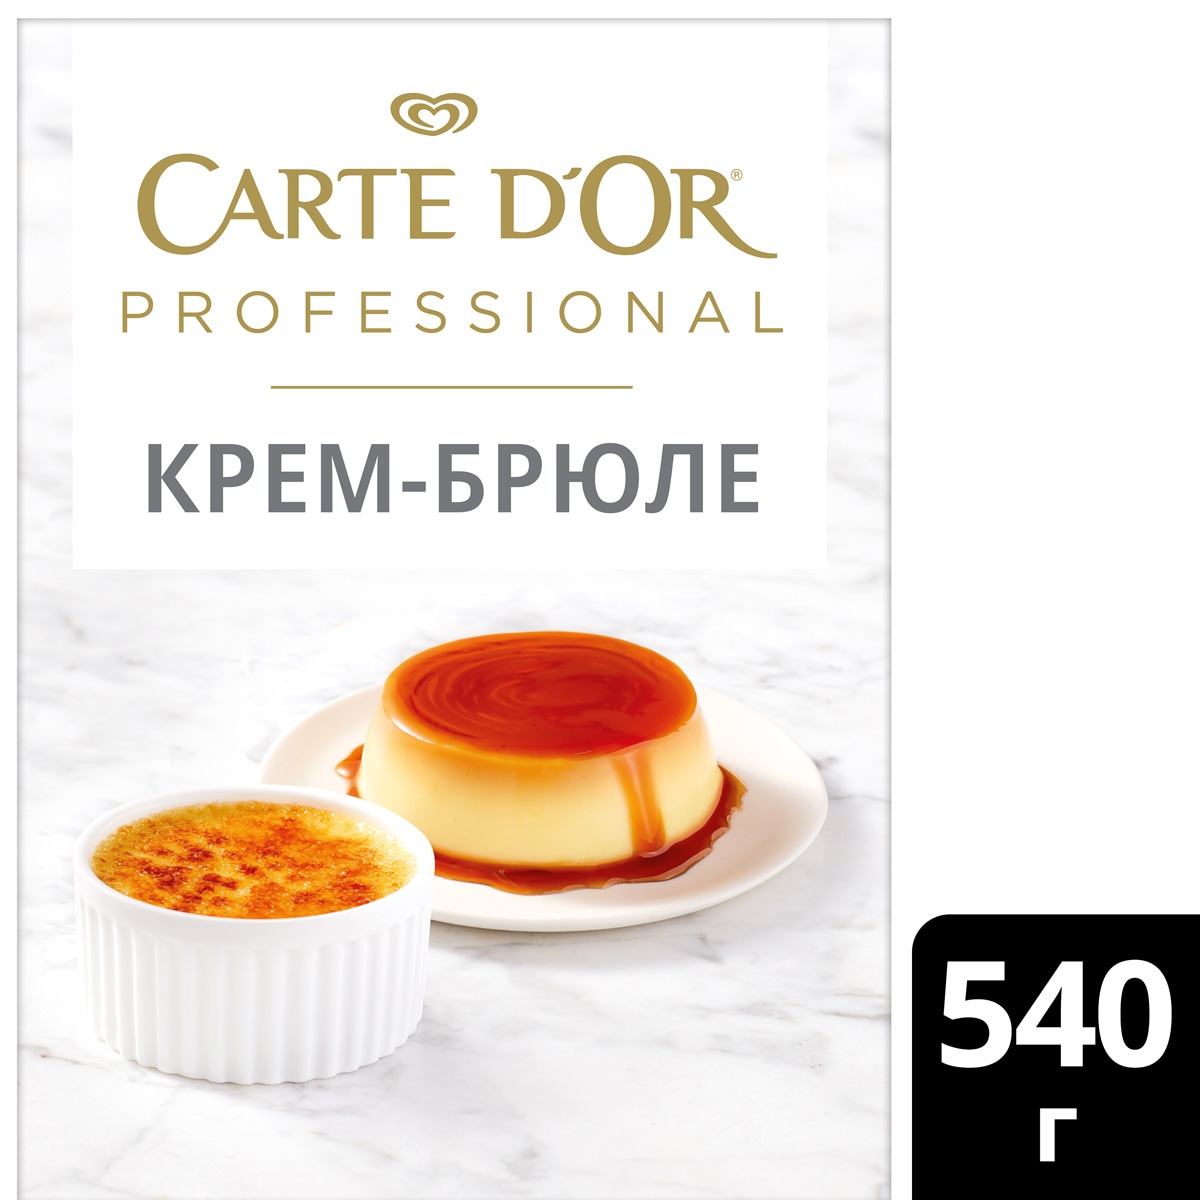 CARTE D'OR PROFESSIONAL Десерт Крем-Брюле Сухая смесь (540 г) - Профессиональные десерты Carte D'Or Professional позволяют готовить аутентичные европейские десерты быстро и просто.